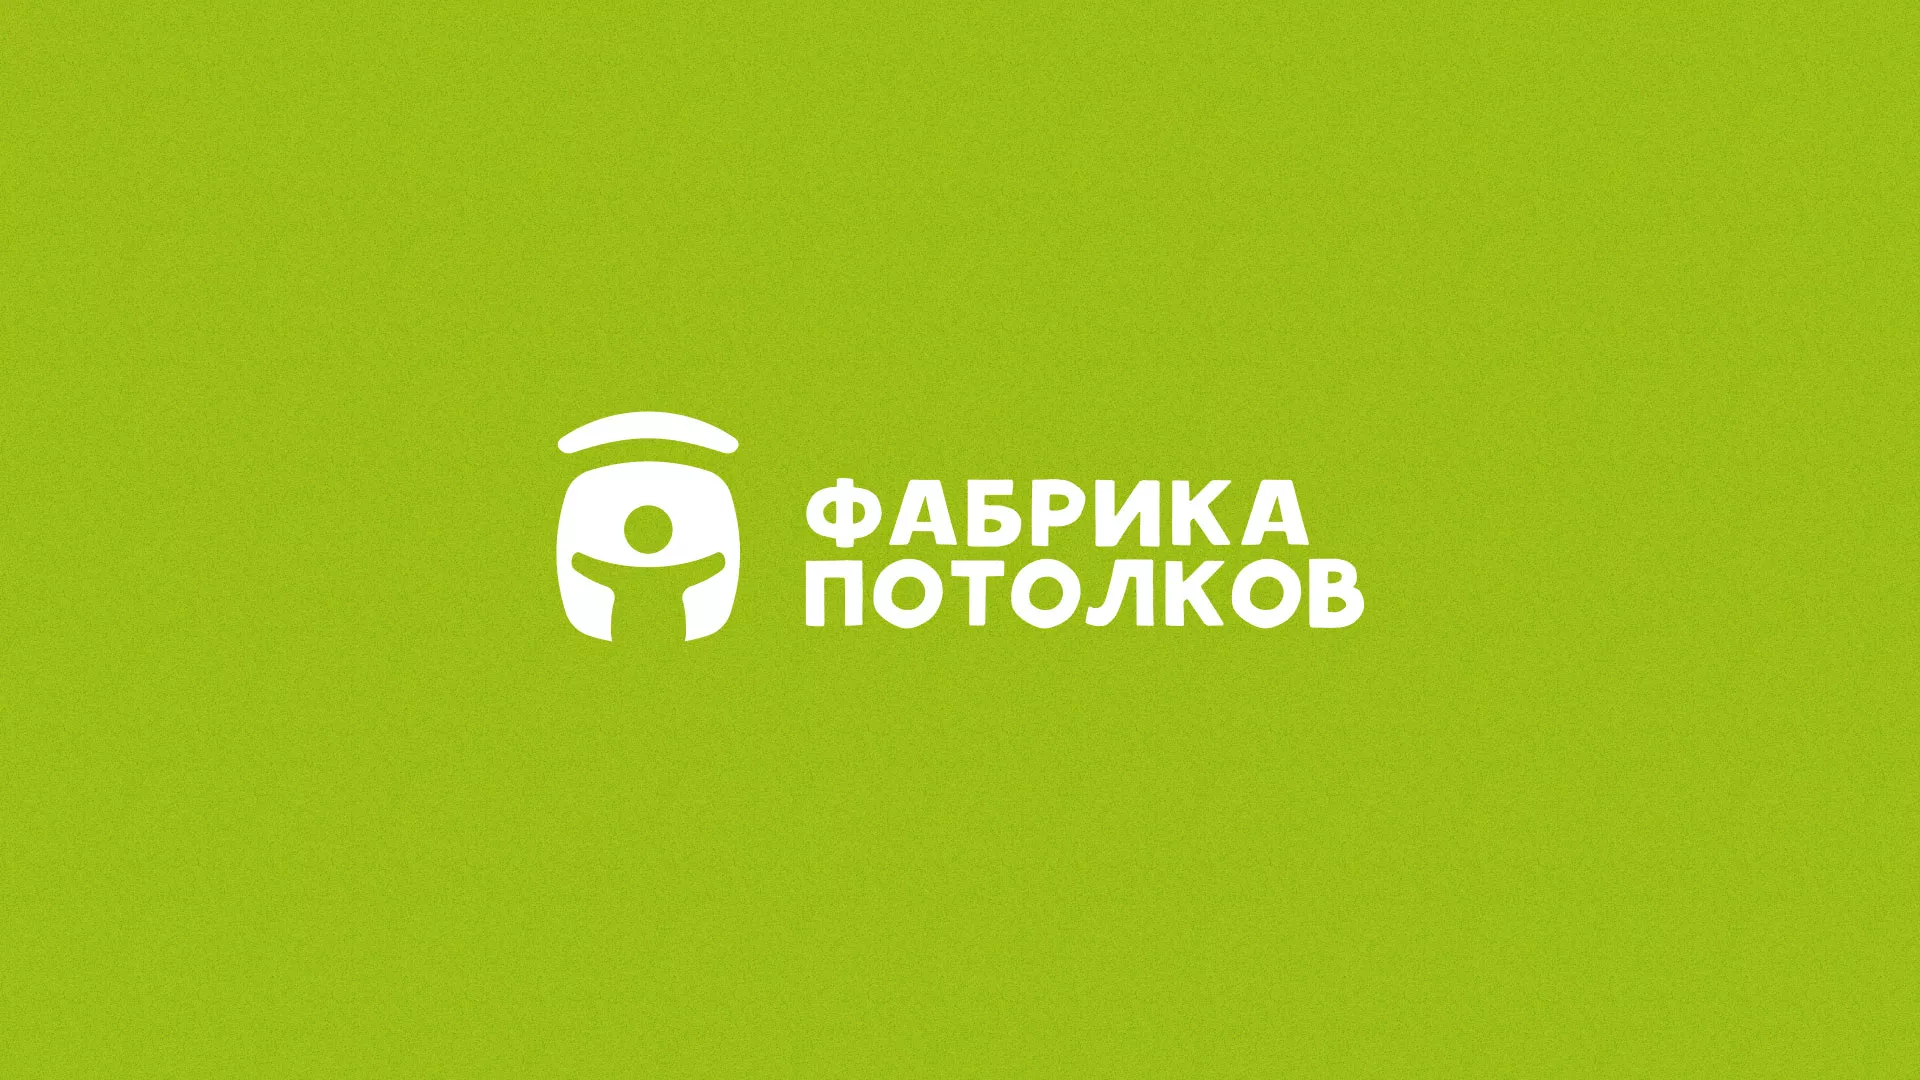 Разработка логотипа для производства натяжных потолков в Ярцево